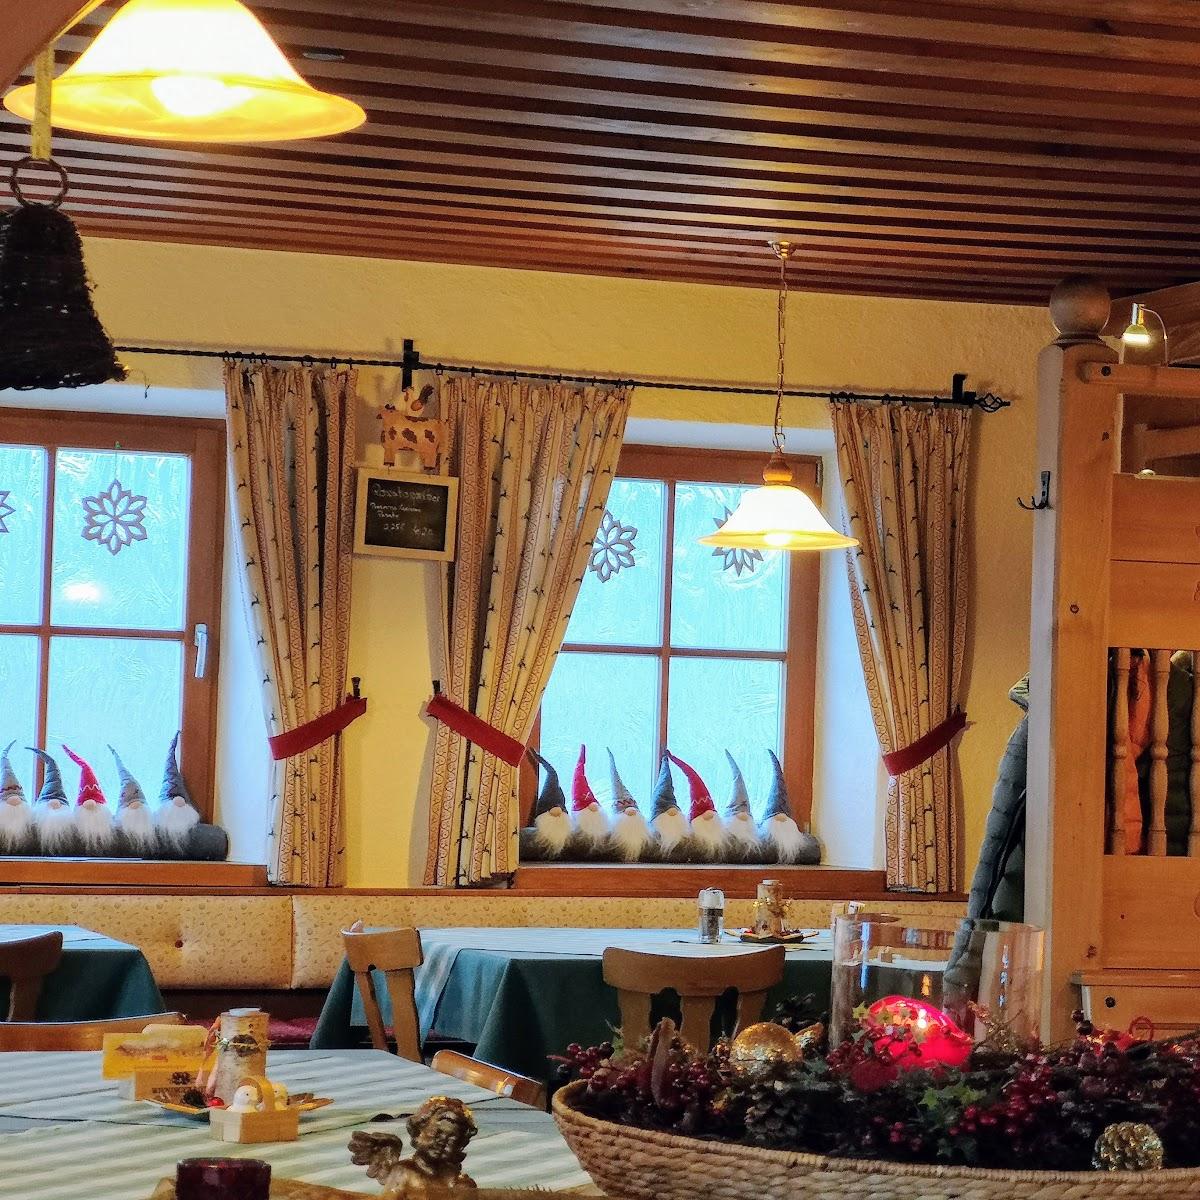 Restaurant "Wirtshaus Wachterl" in  Berchtesgaden